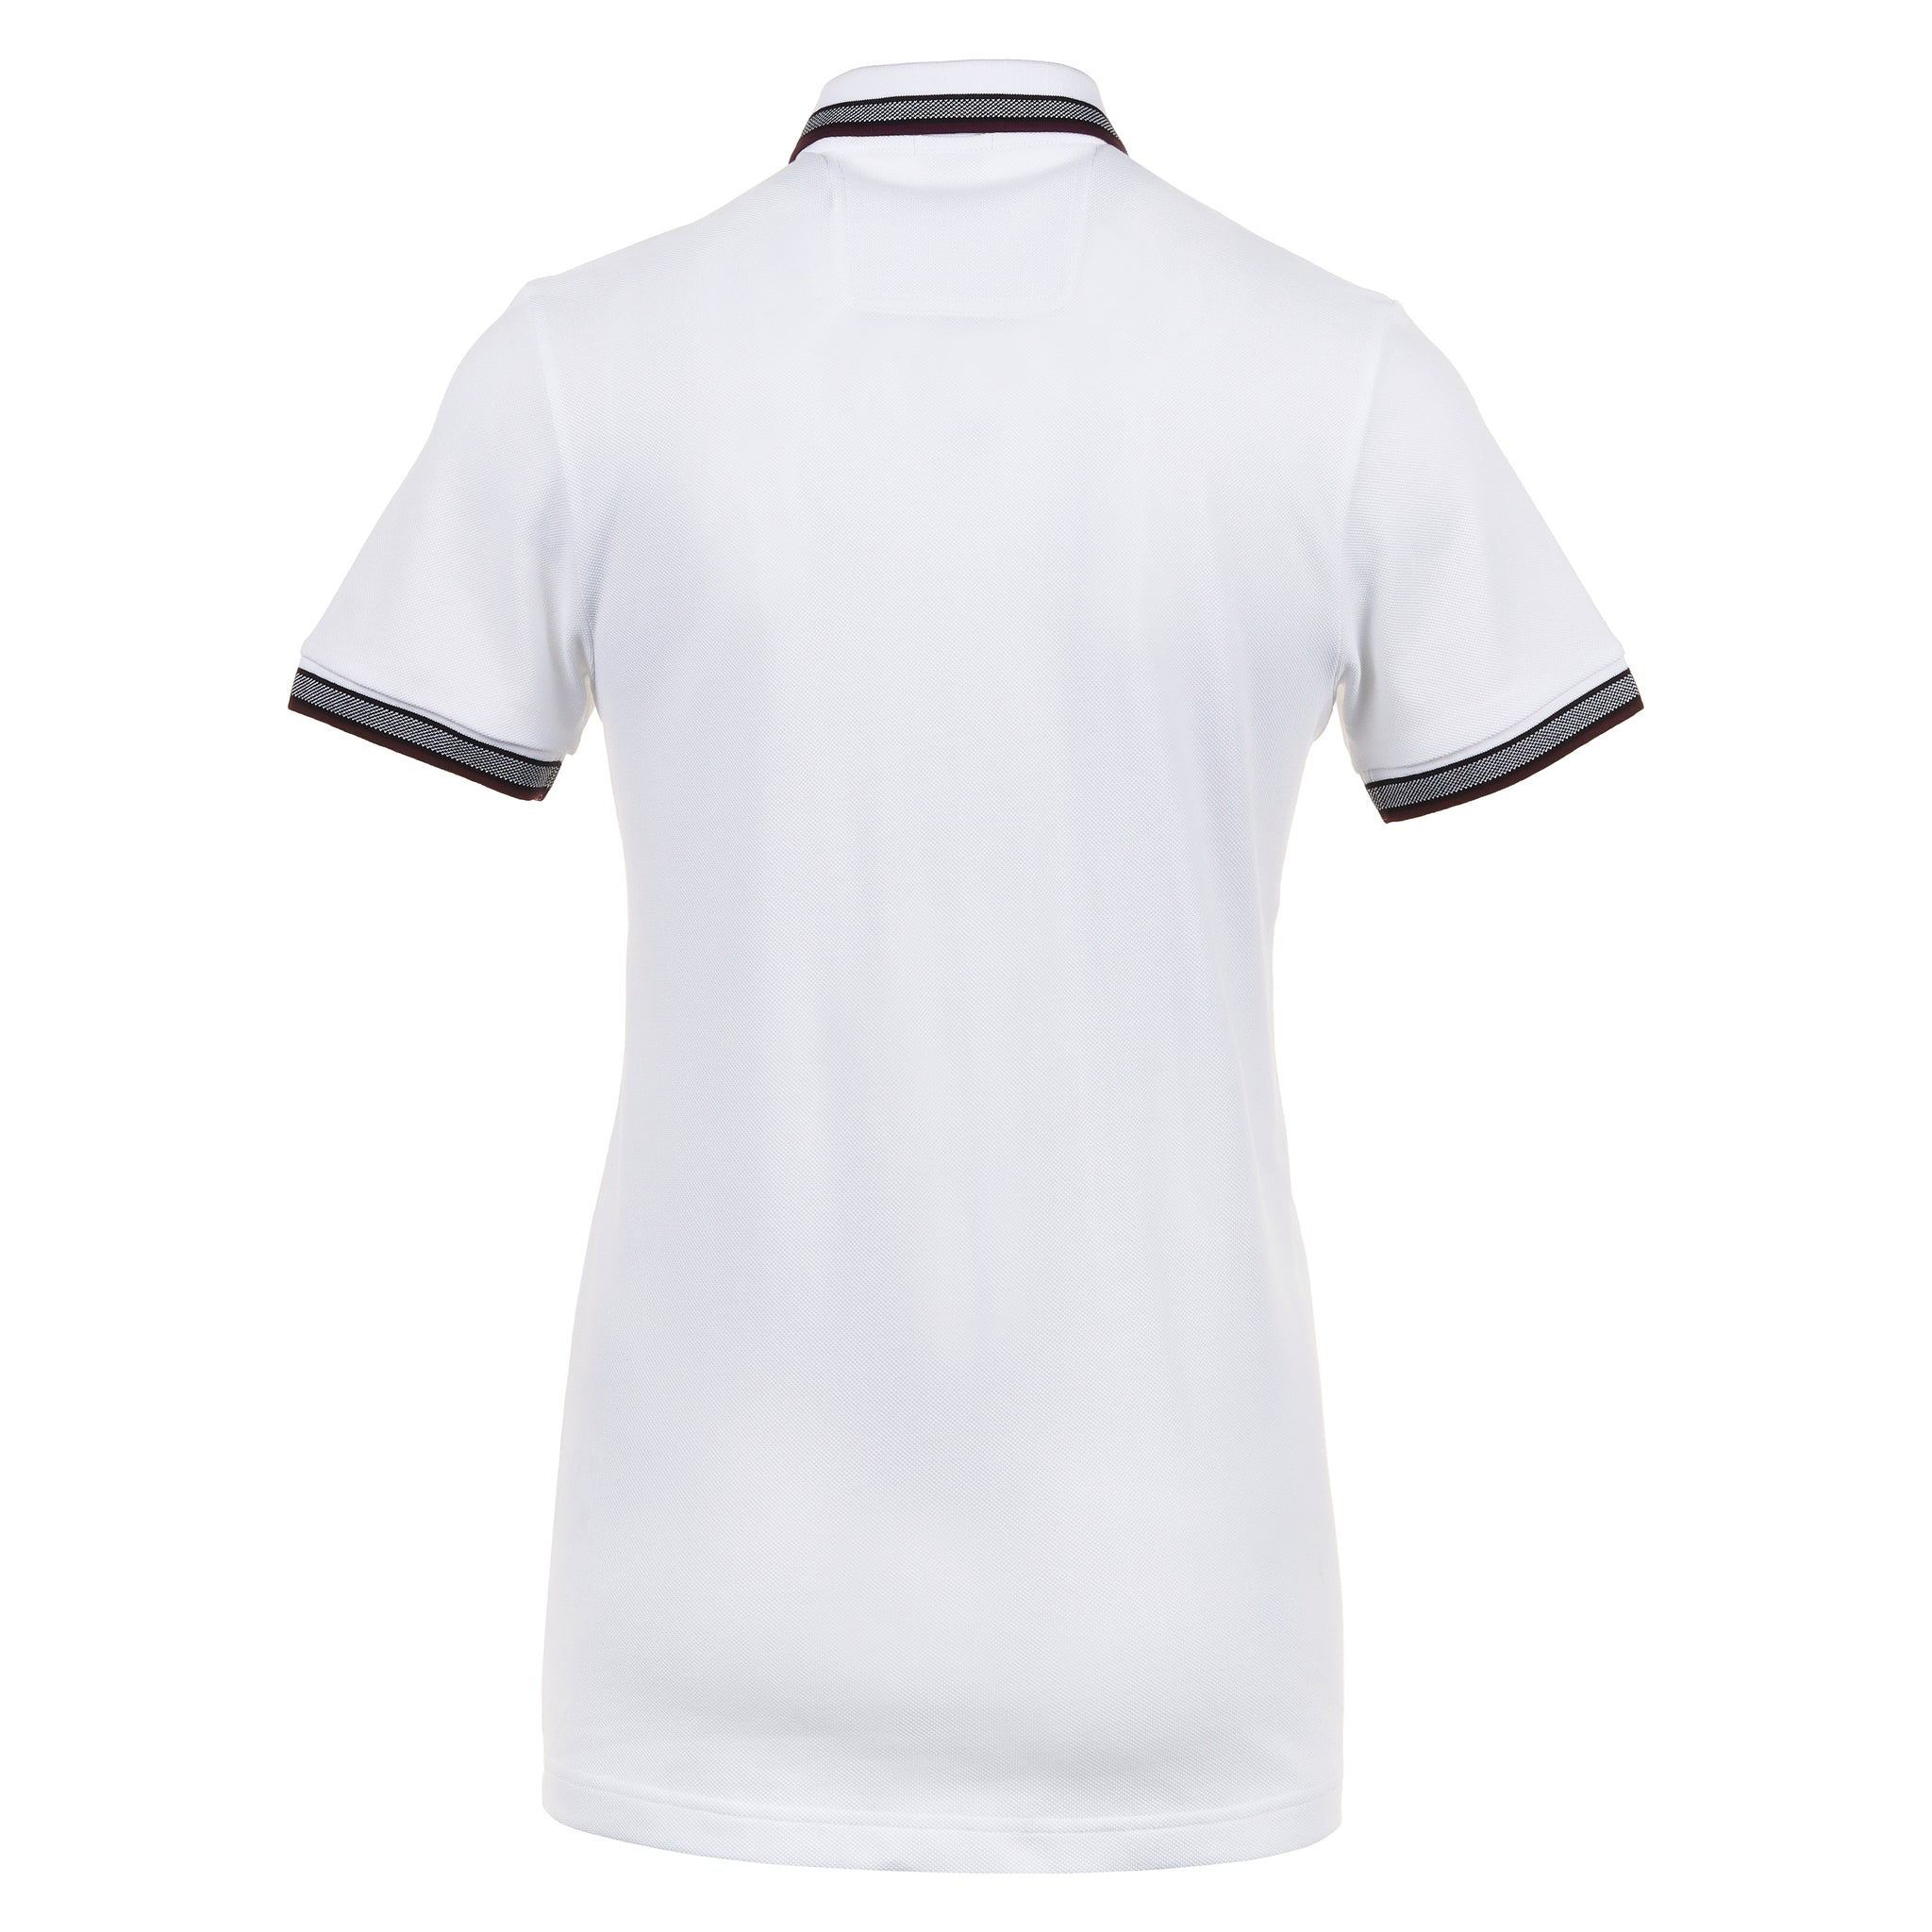 boss-paddy-polo-shirt-50469055-102-white